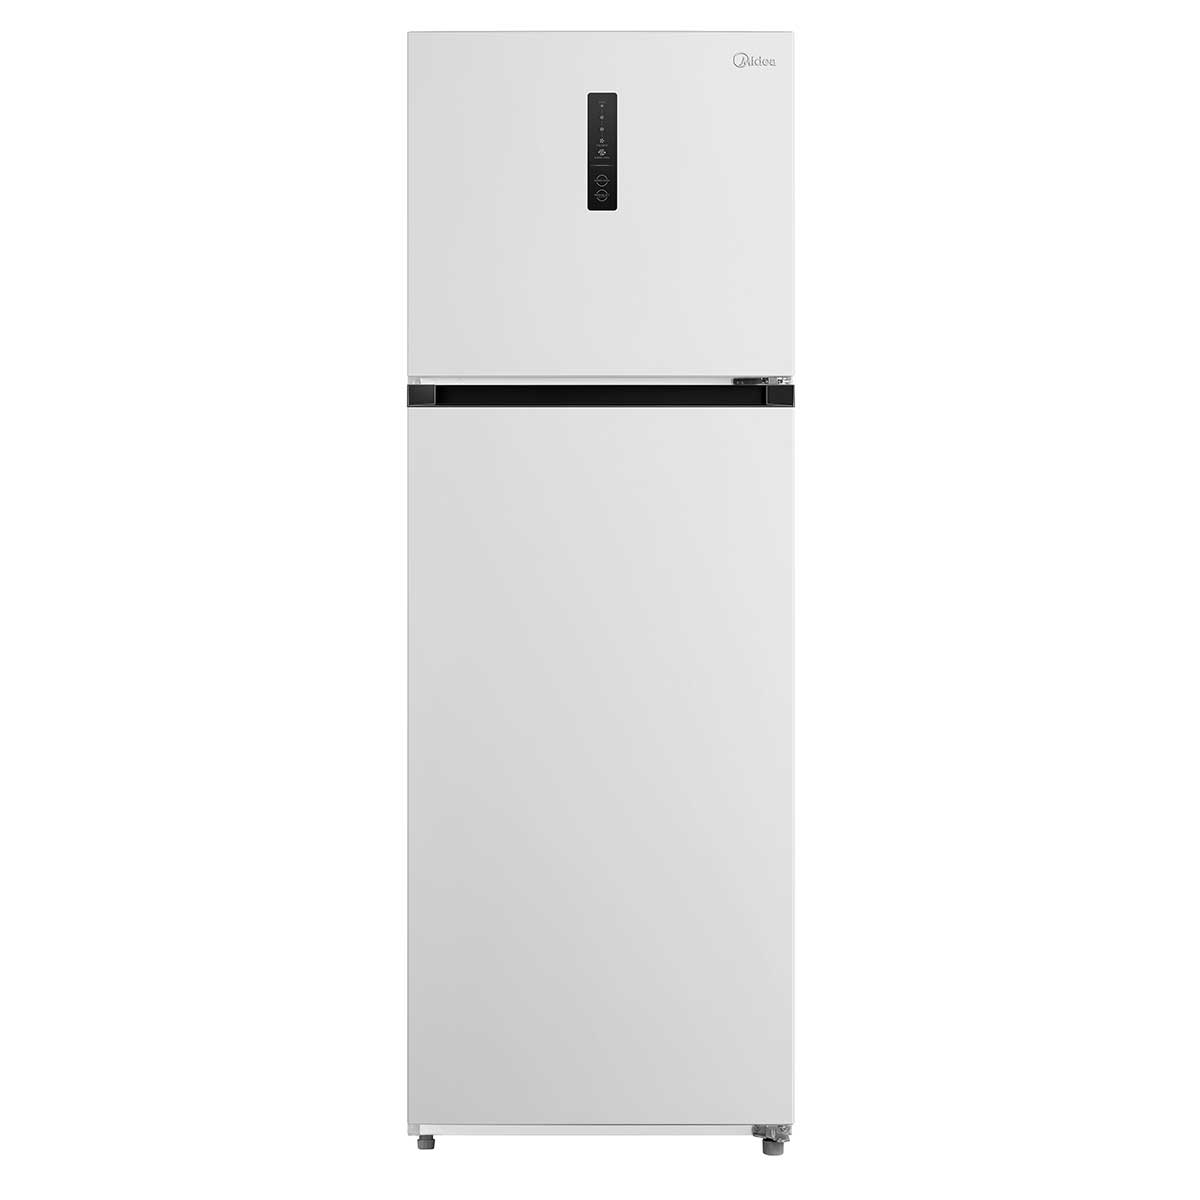 refrigerador-midea-rt468mta011-frost-free-smartsensor-347l-branco-110v-1.jpg